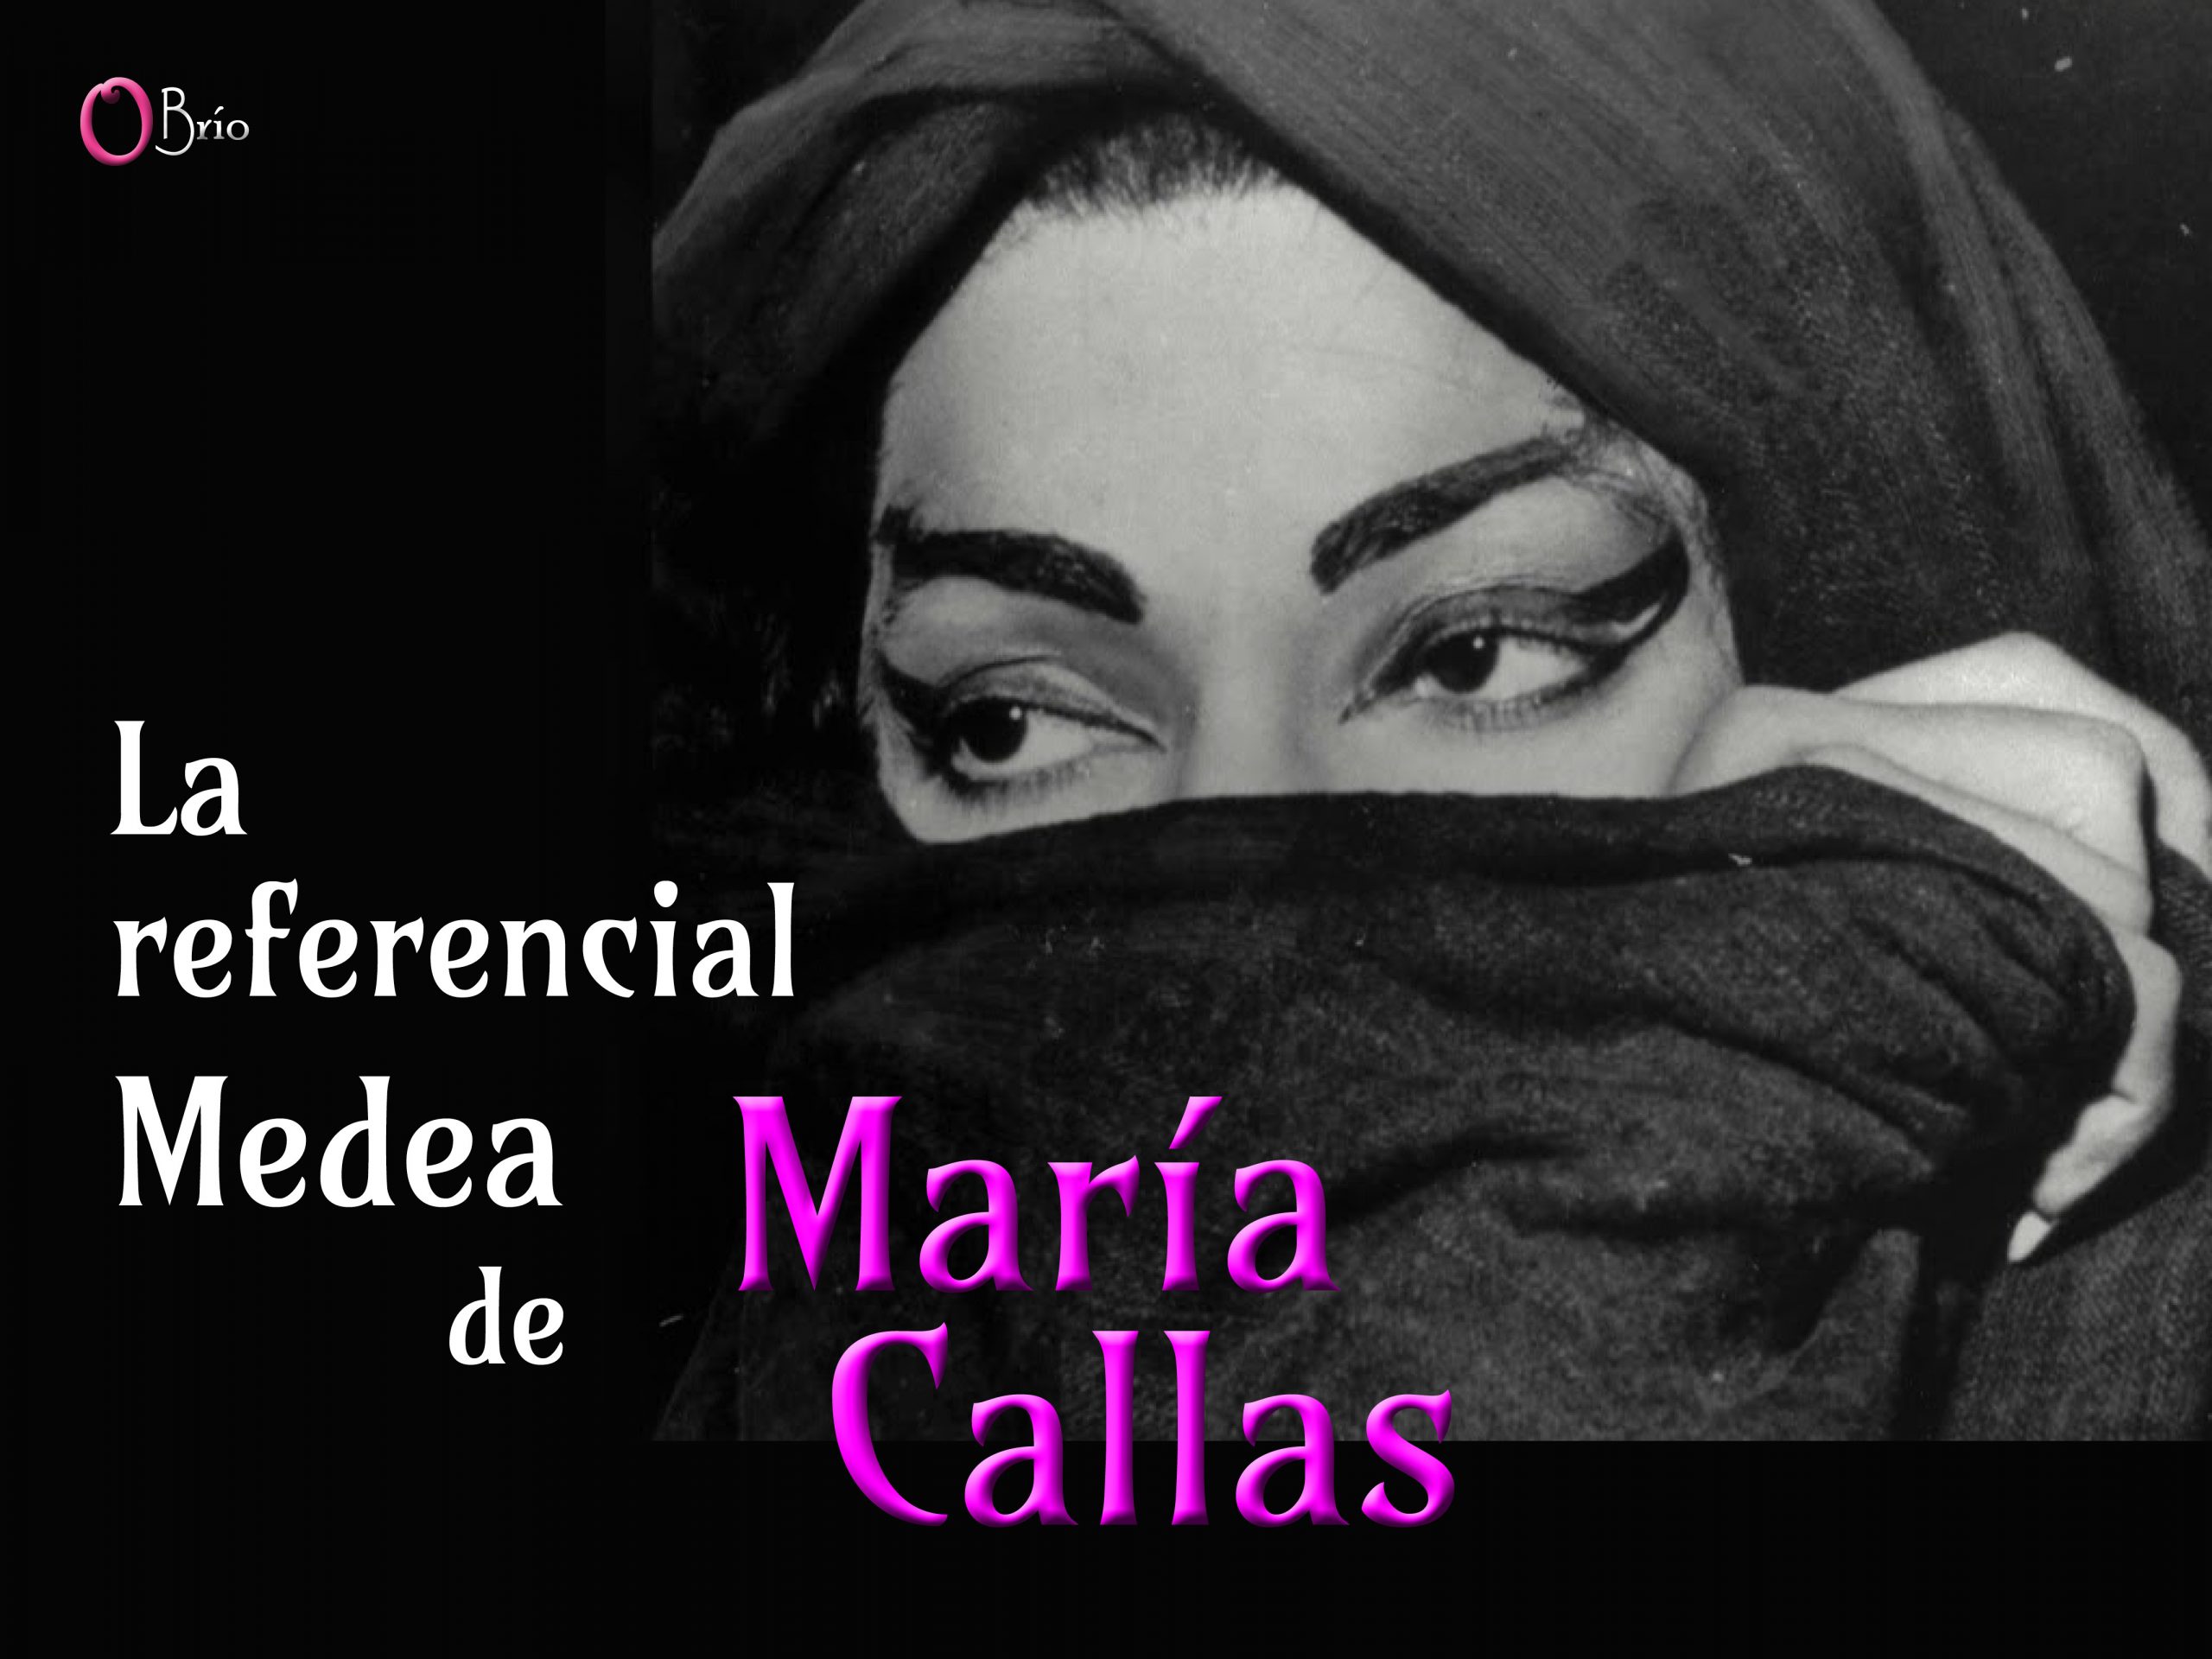 María Callas-Medea